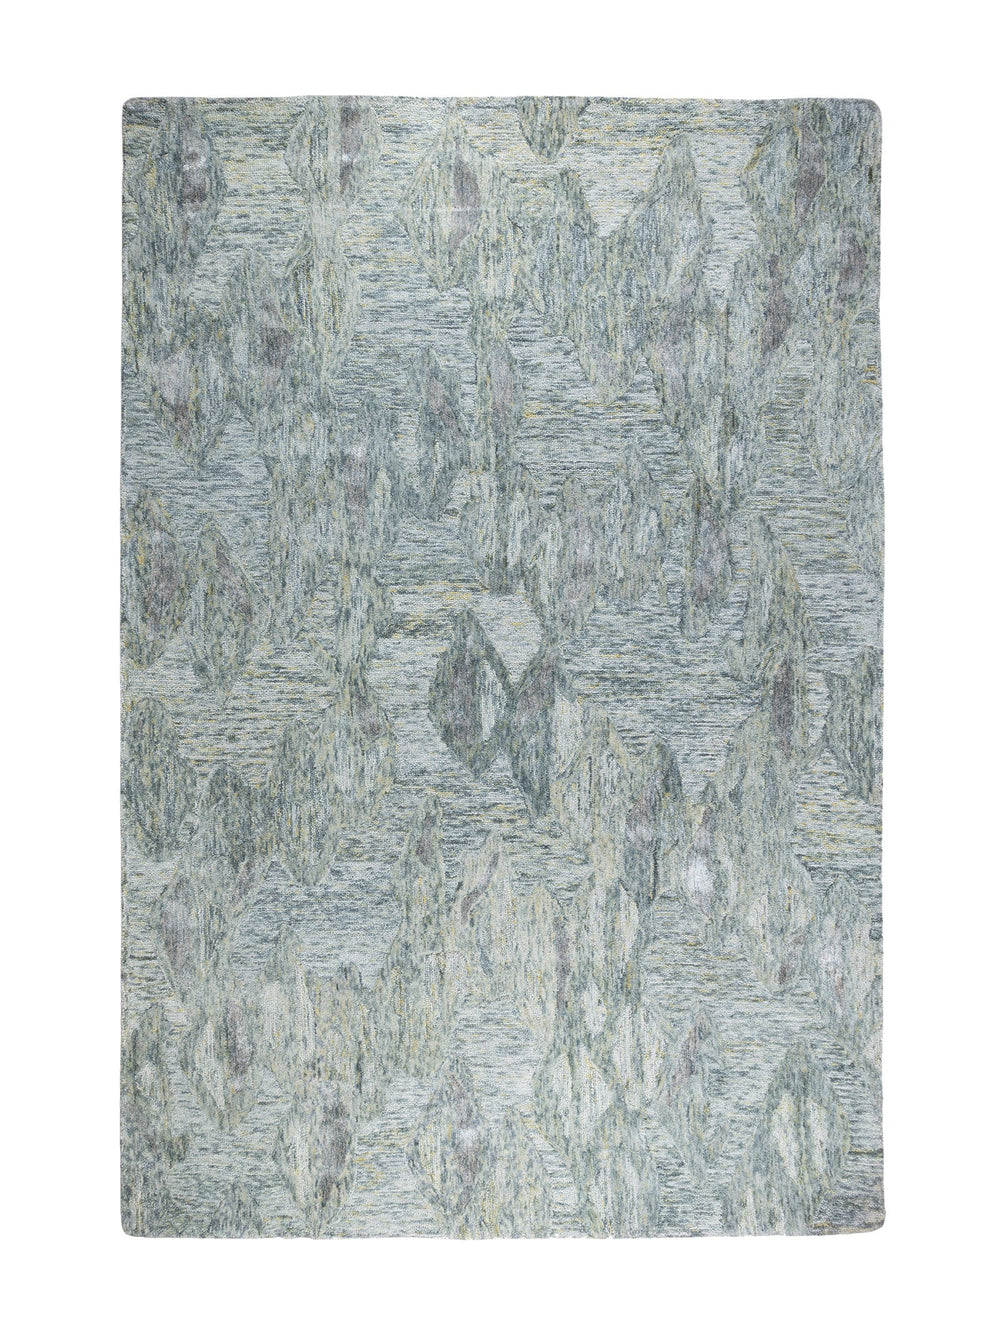 Beau Rug in Waterfall - rug- Hertex Haus Online - Abstract